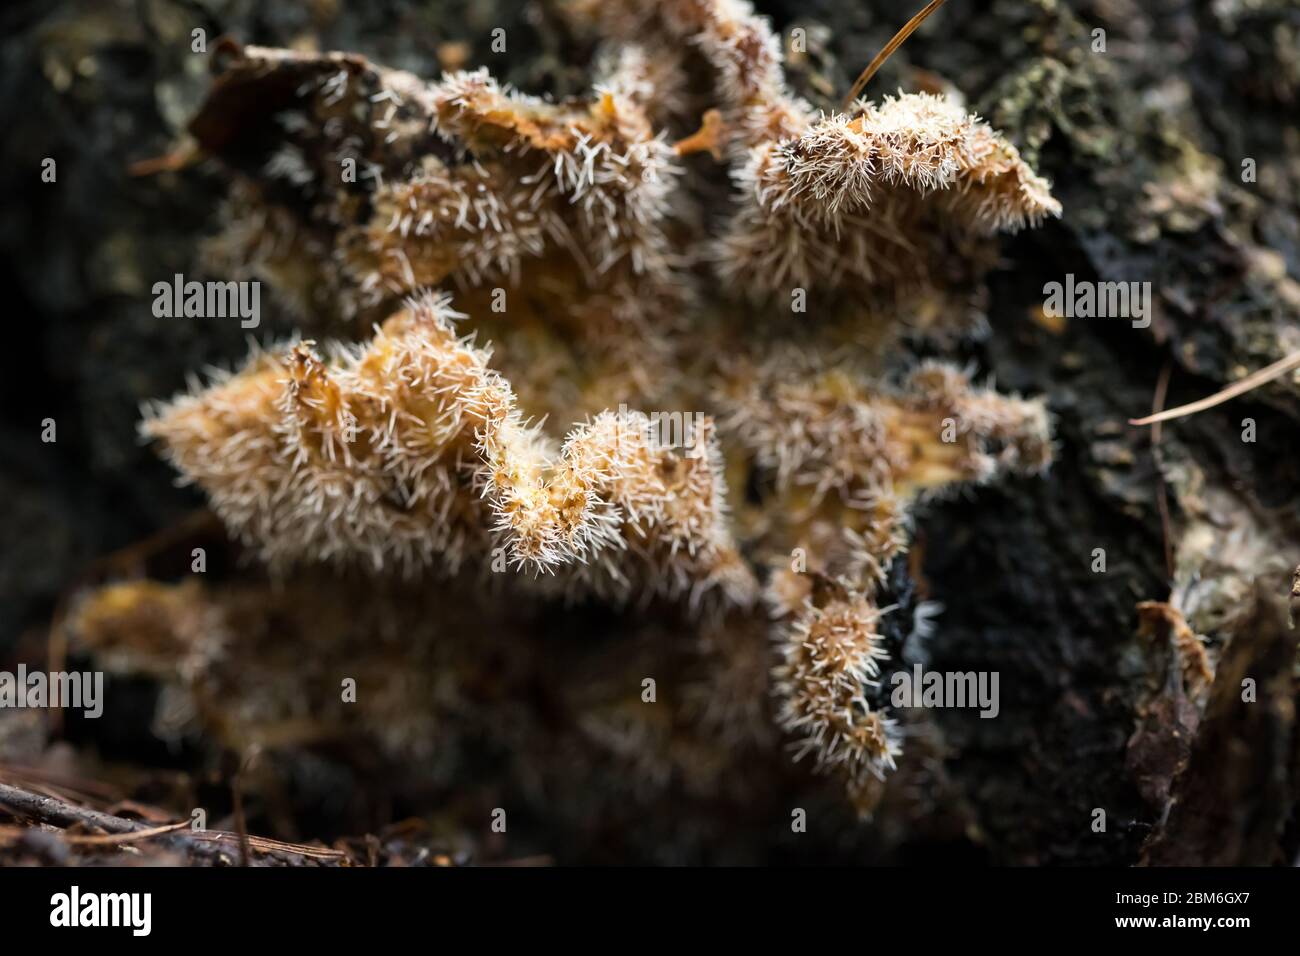 Parasitic cactus fungi (Tilachlidium brachiatum) Stock Photo